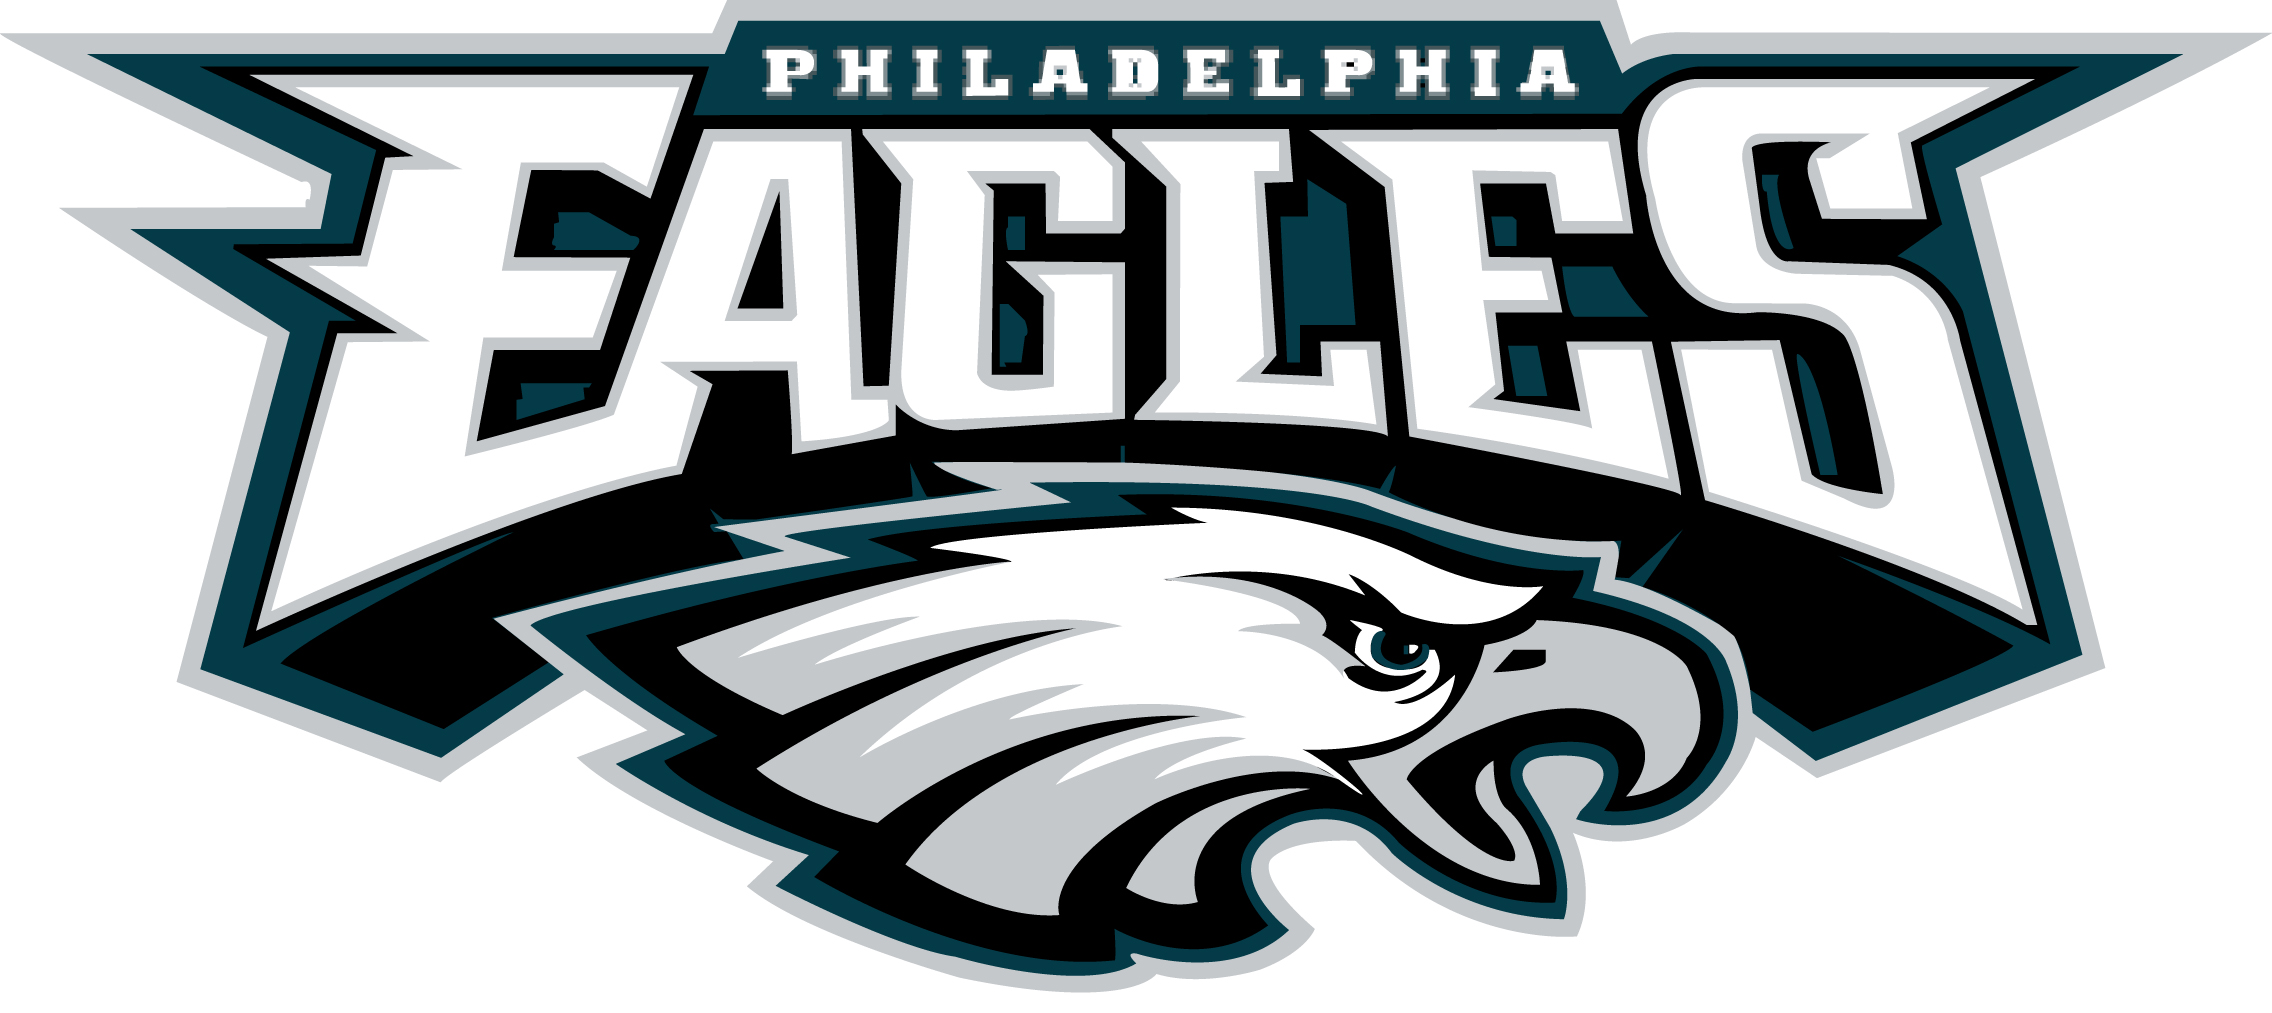 Philadelphia Eagles Nfl Football R Wallpaper